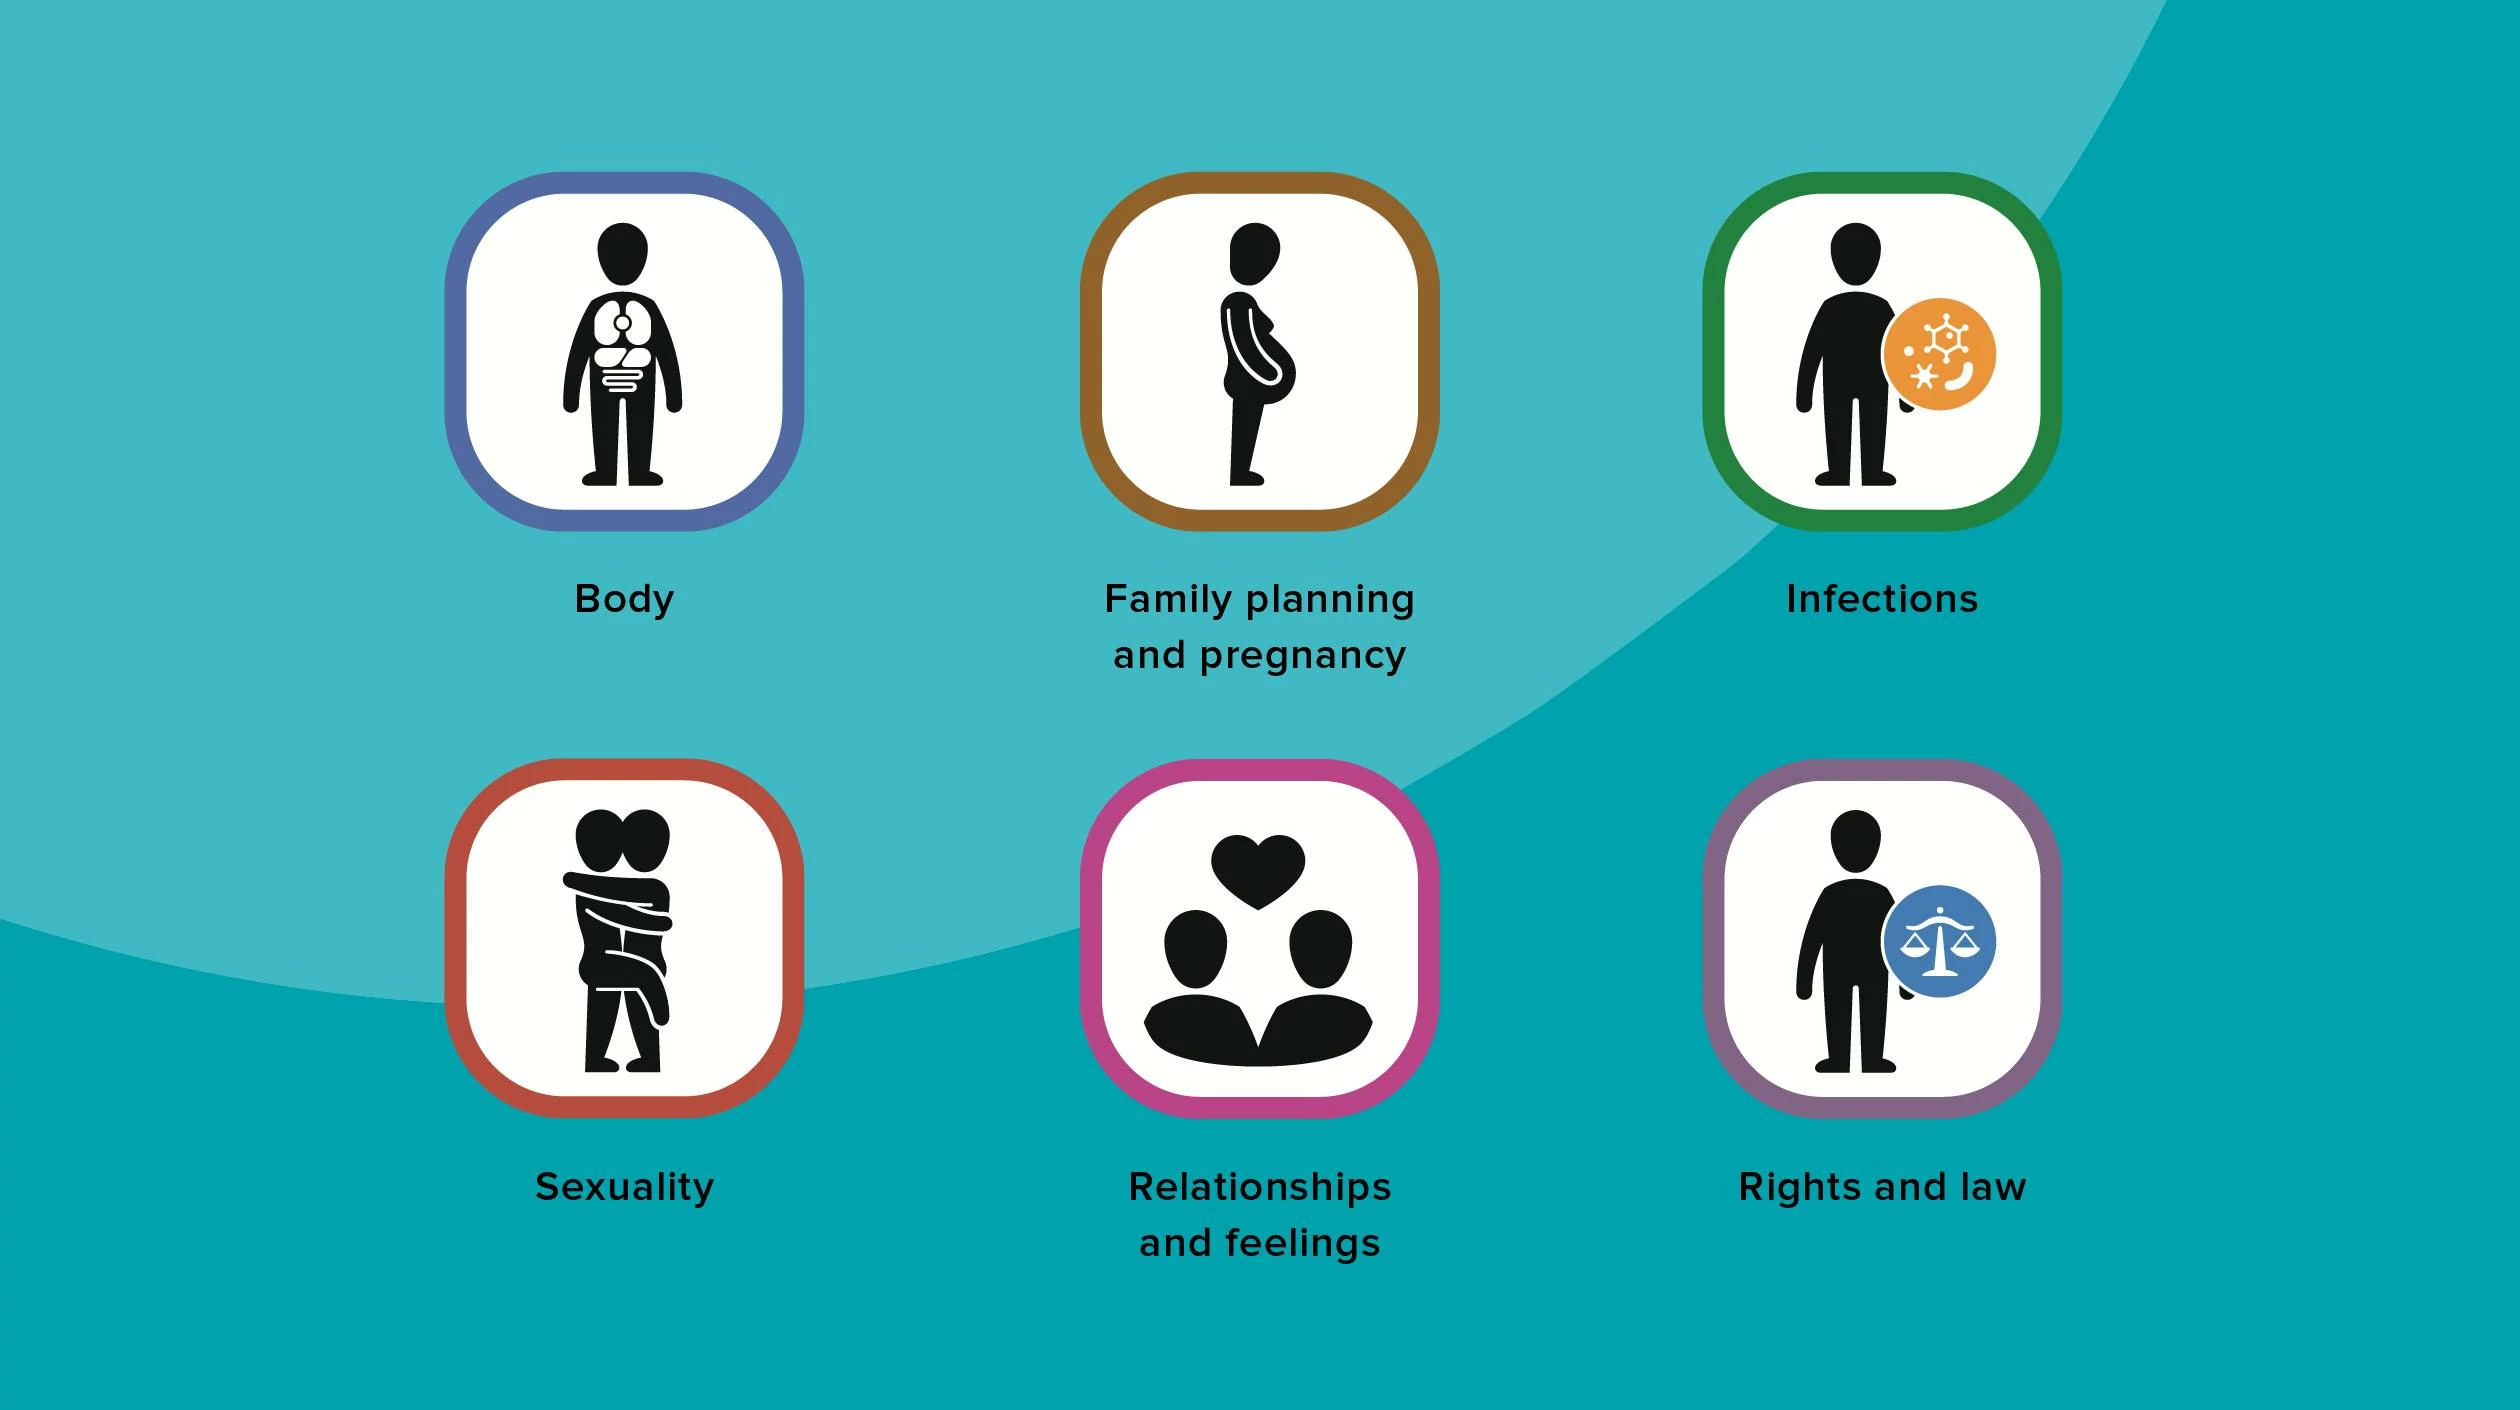 Sechs Symbole mit menschlichen Darstellungen. Diese stellen das Inhaltsspektrum von ZANZU dar: Körper, Familienplanung und Schwangerschaft, Infektionen, Sexualität, Beziehungen und Gefühle, Rechte und Gesetz